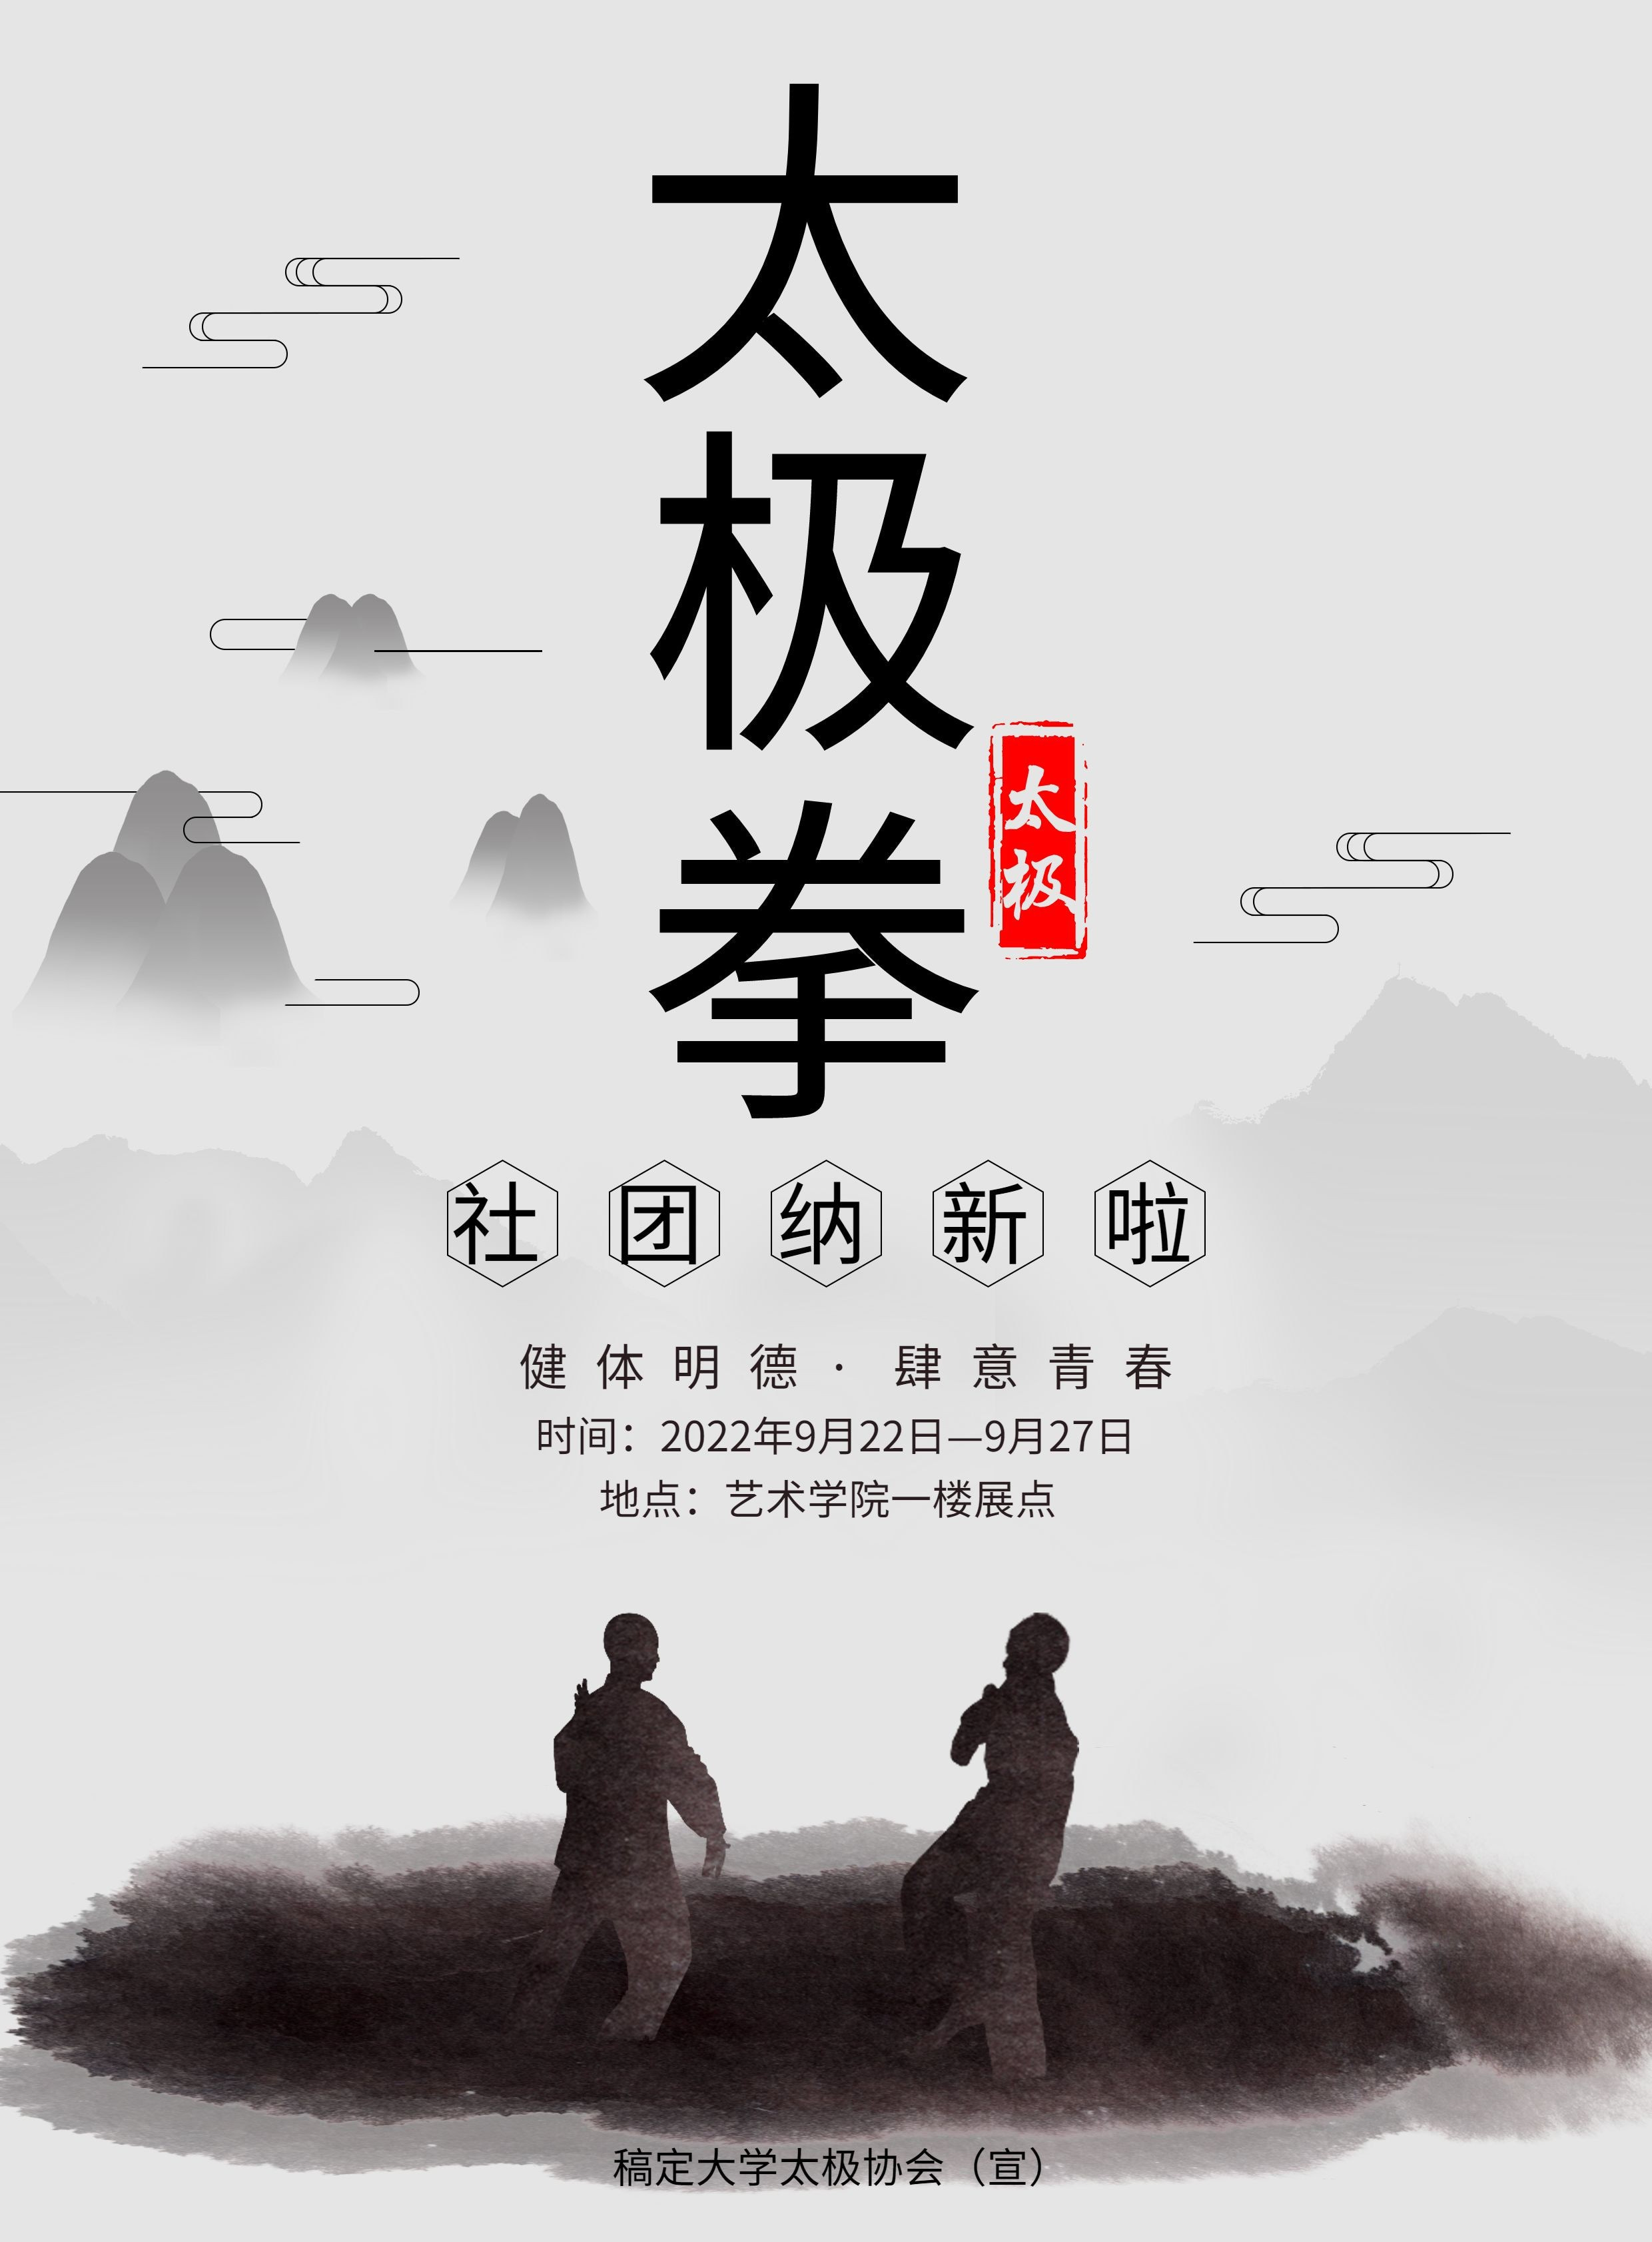 太极拳社团纳新中国风印刷海报预览效果